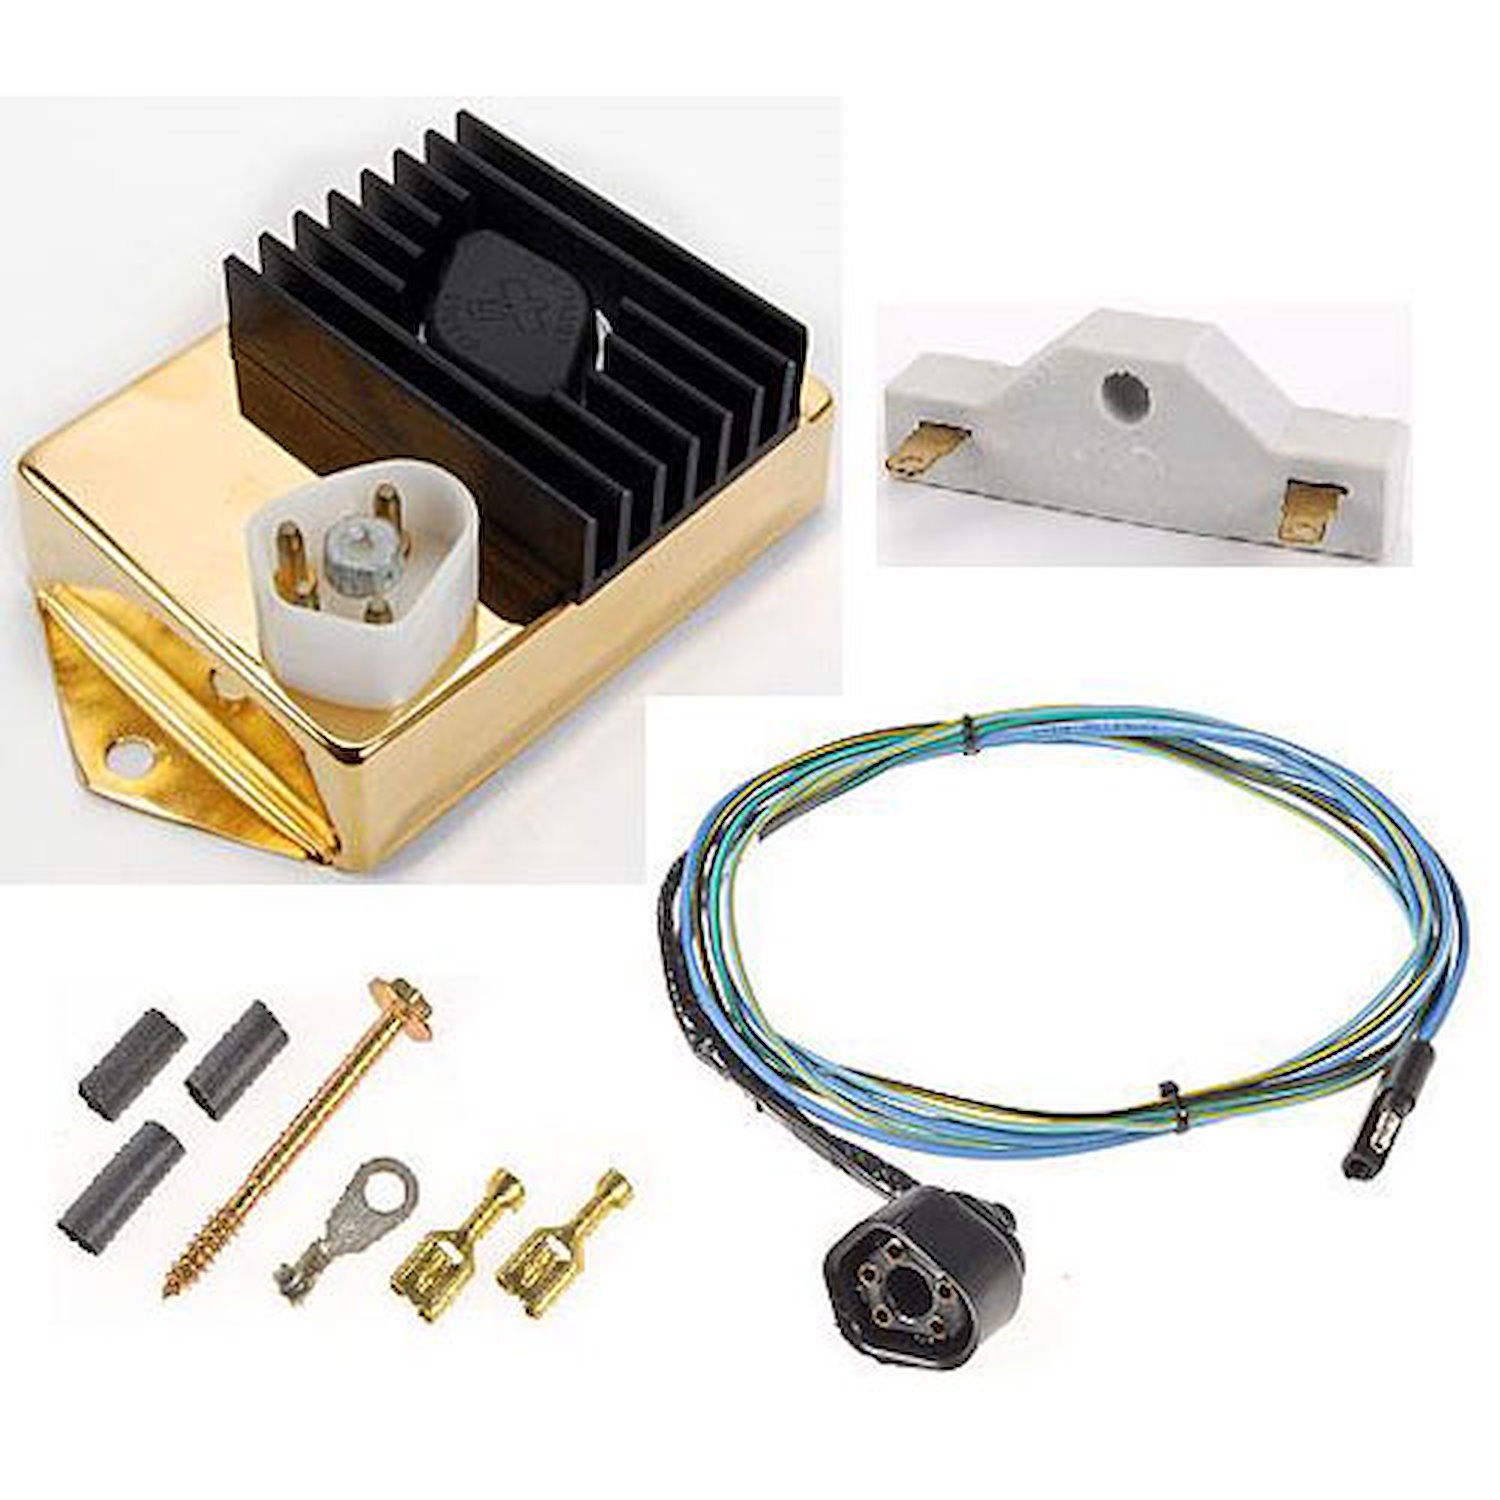 Mopar Ignition Kit Includes: Gold Ignition Control Unit 312-P4120600